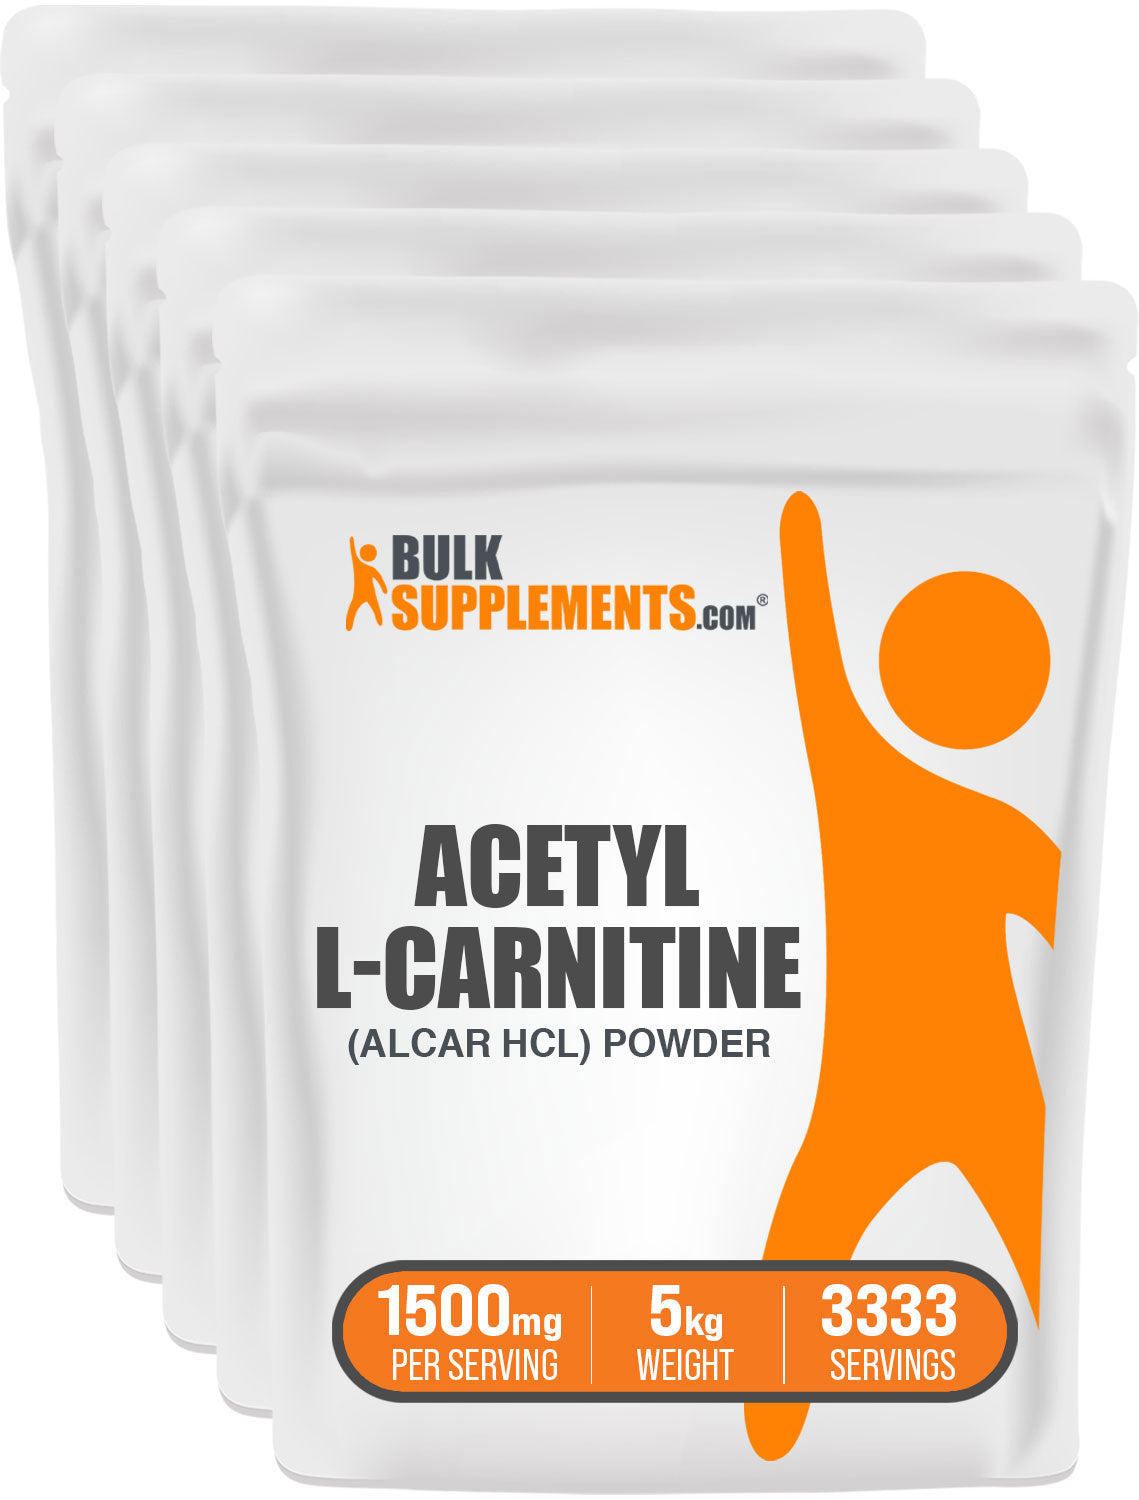 BulkSupplements.com ALCAR HCl Powder 5kg Bags